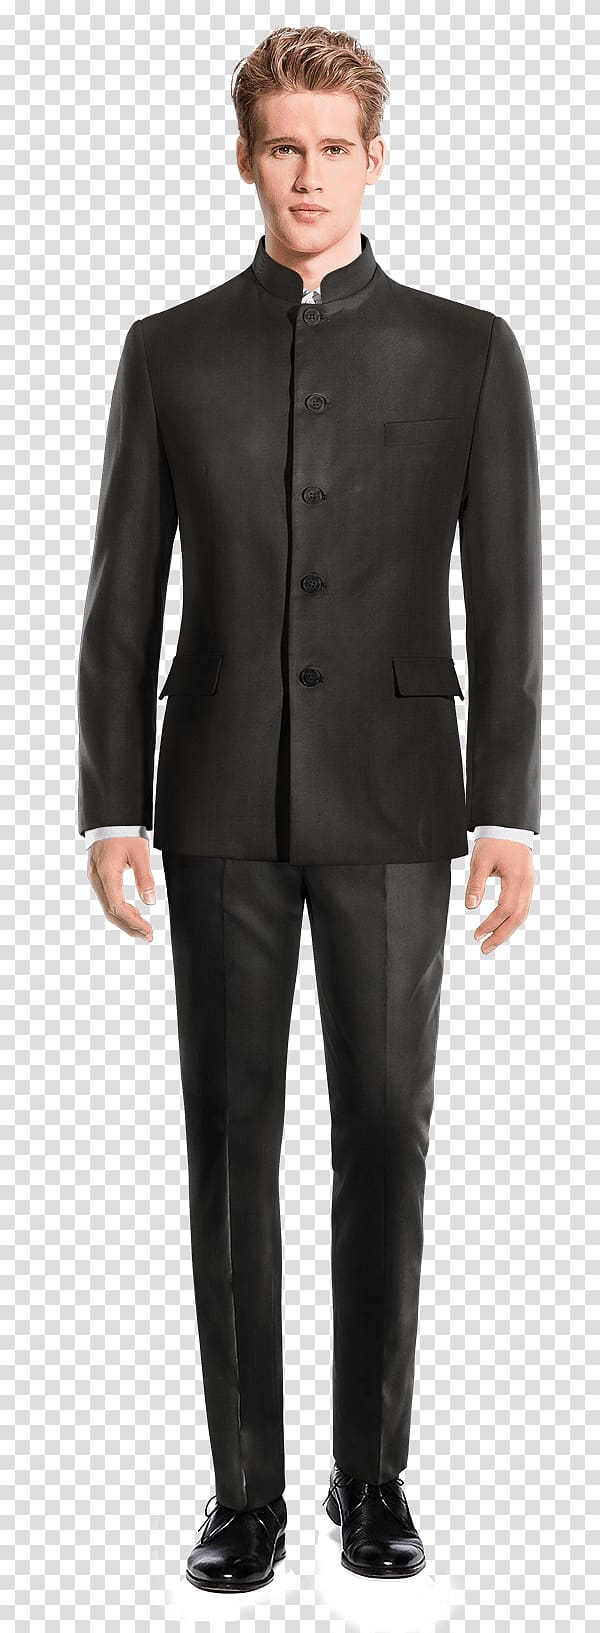 Tweed Mao suit Tuxedo Pants, black suit transparent background PNG clipart